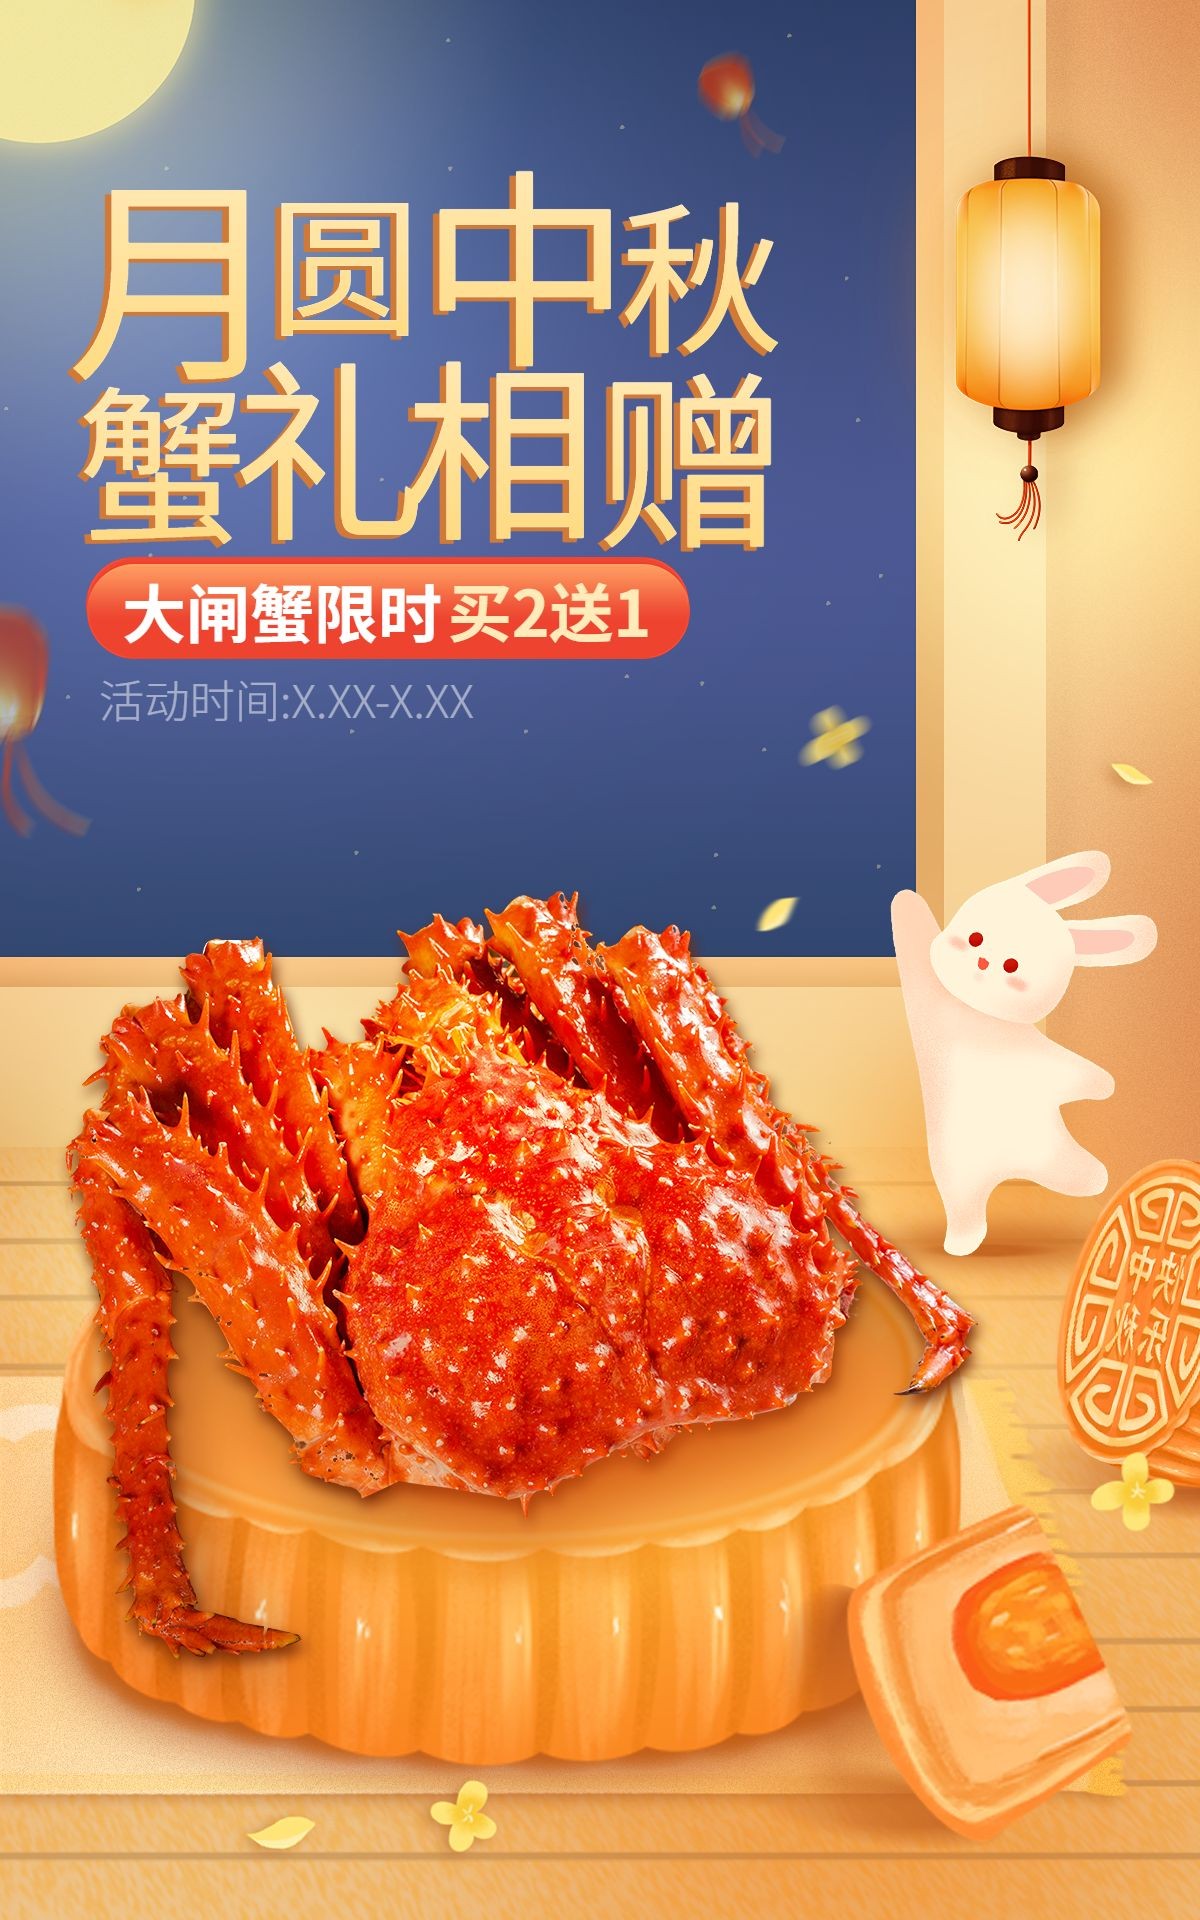 中秋节电商食品大闸蟹促销活动手绘海报预览效果